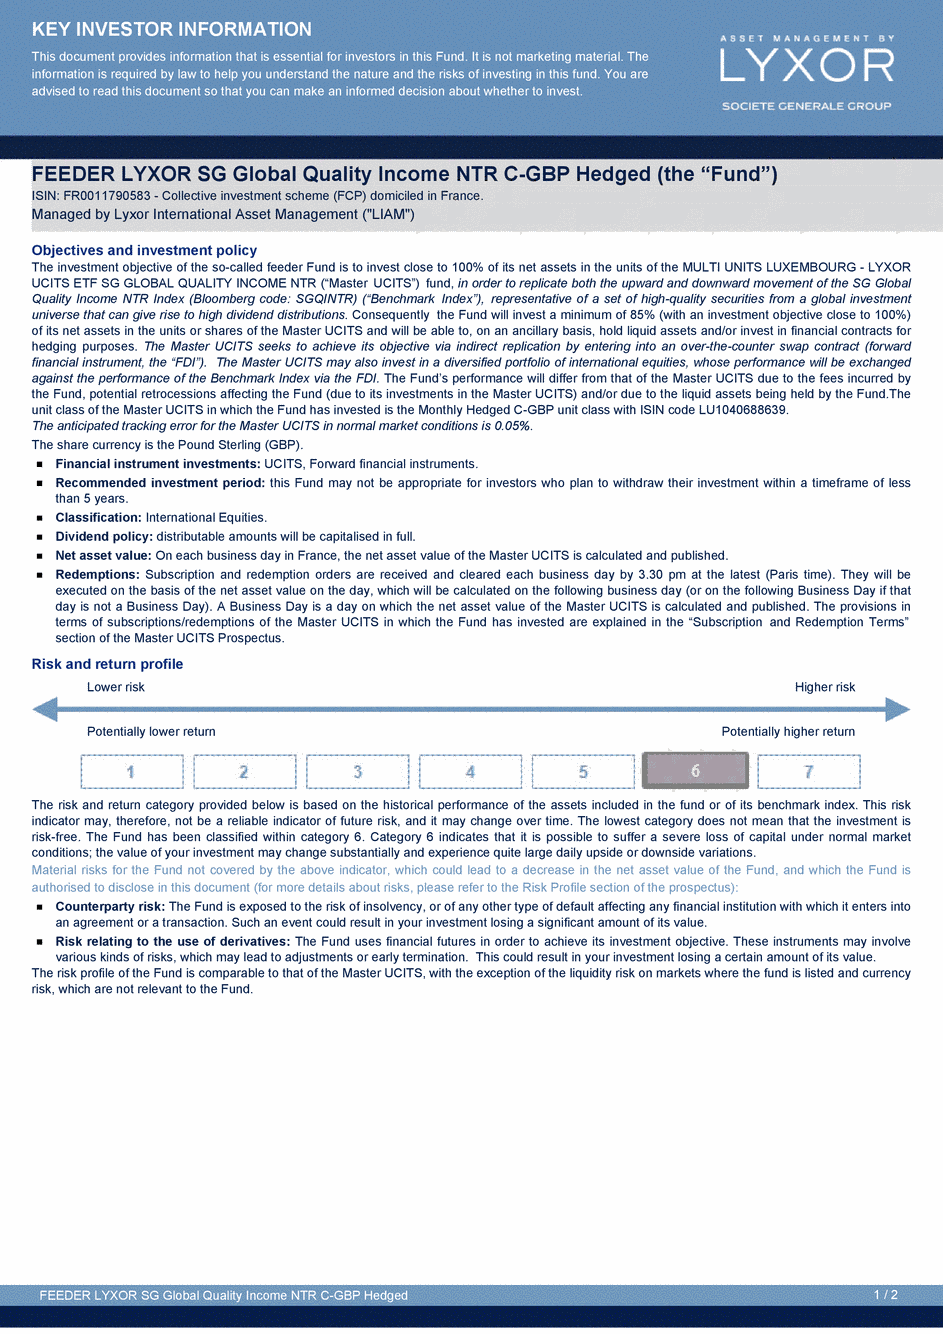 DICI FEEDER LYXOR SG GLOBAL QUALITY INCOME NTR C-GBP-Hedged - 24/04/2015 - Anglais